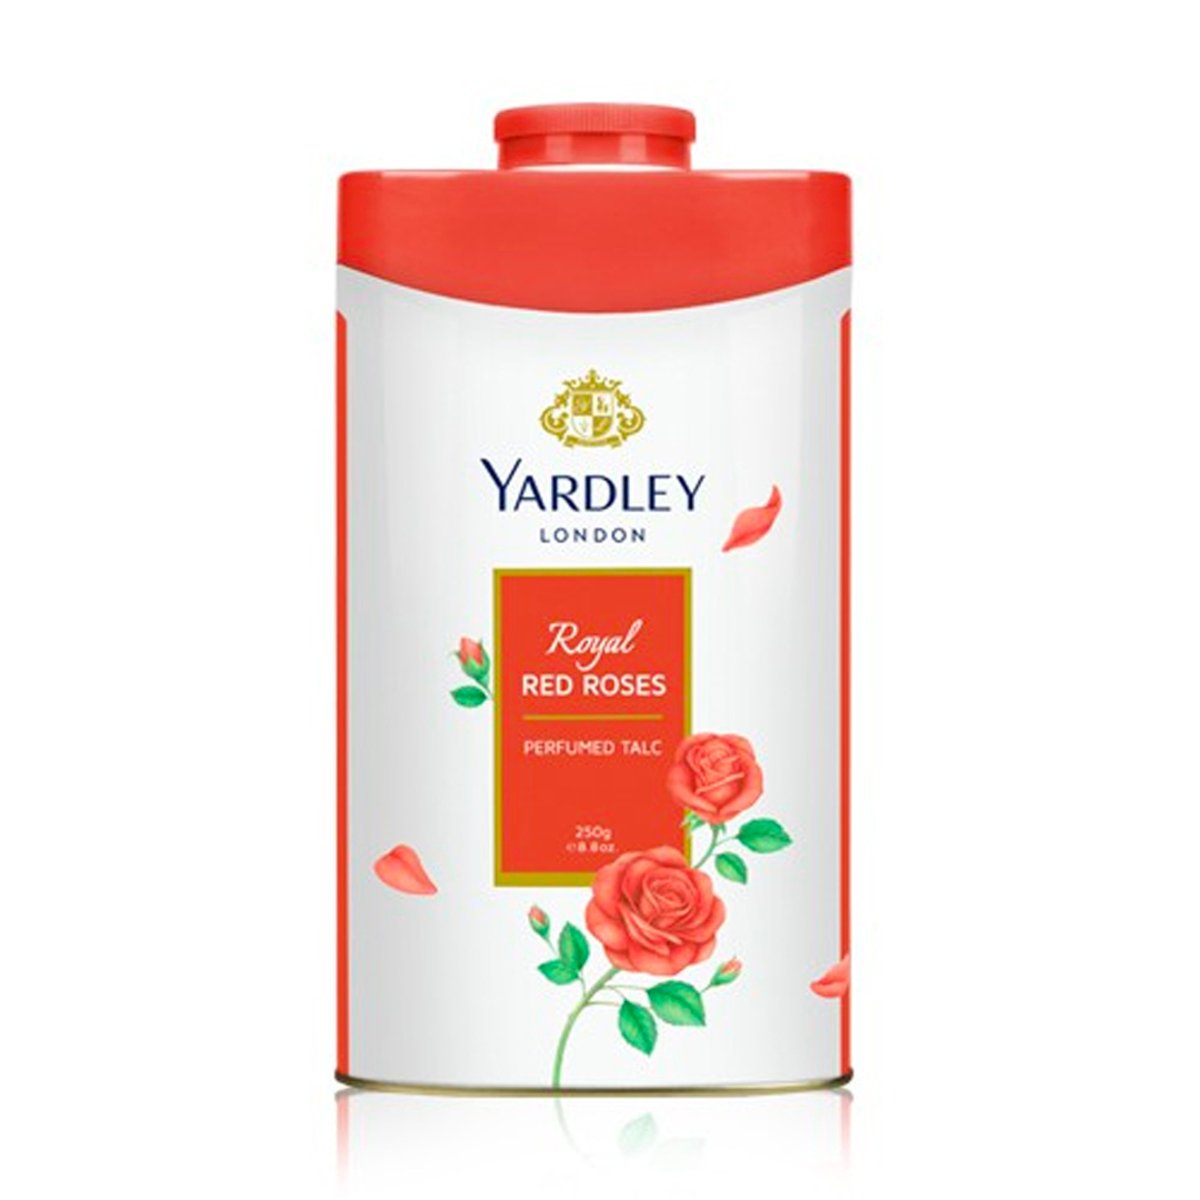 Yardley Talc Royal Red Roses 125g